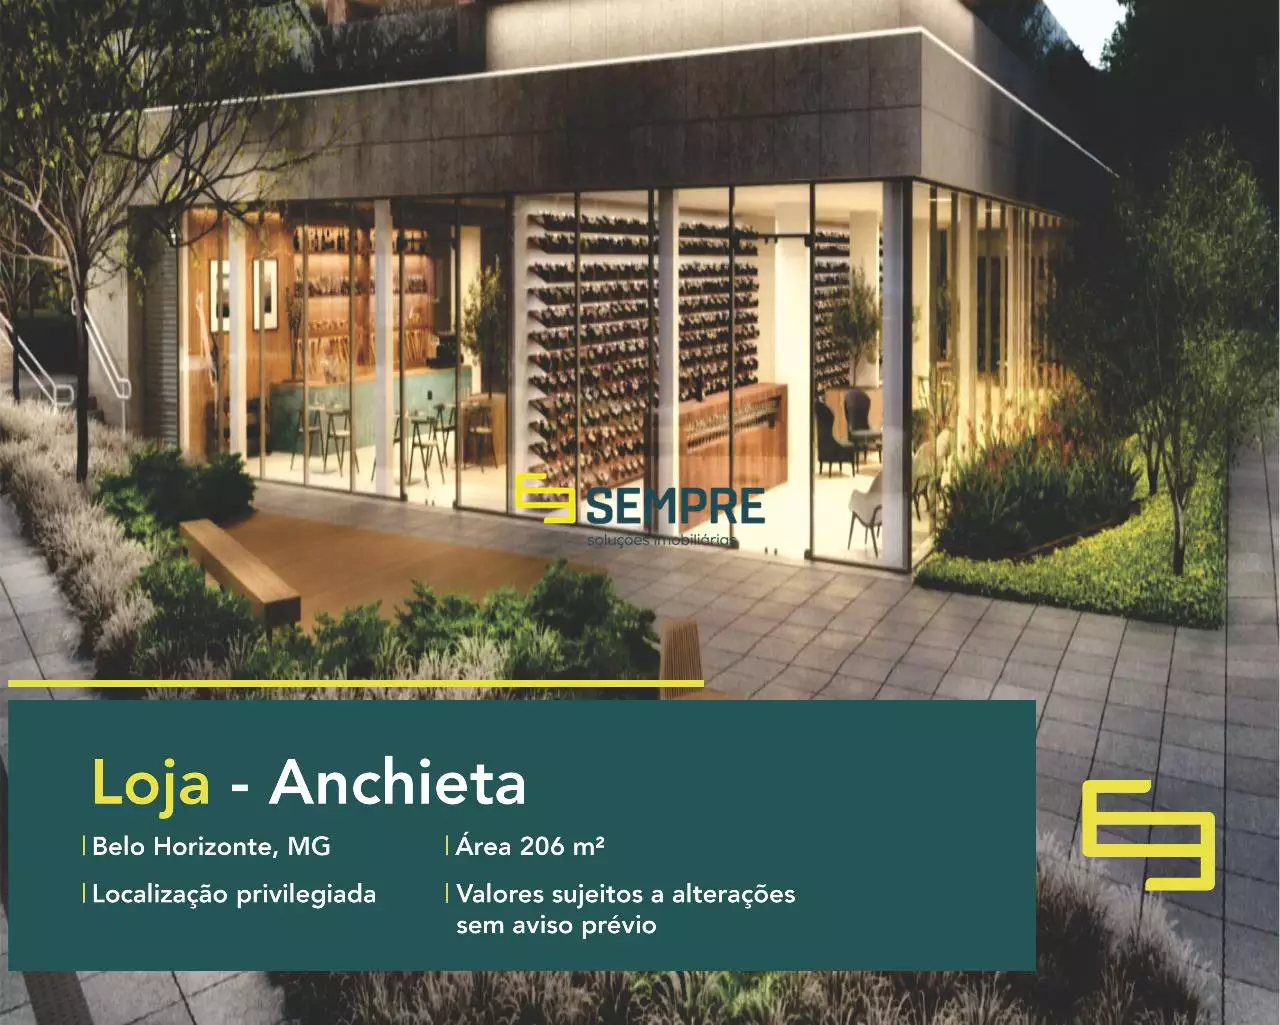 Loja à venda no Edifício Sollum - Anchieta, em excelente localização. O estabelecimento comercial conta com área de 206,22 m².